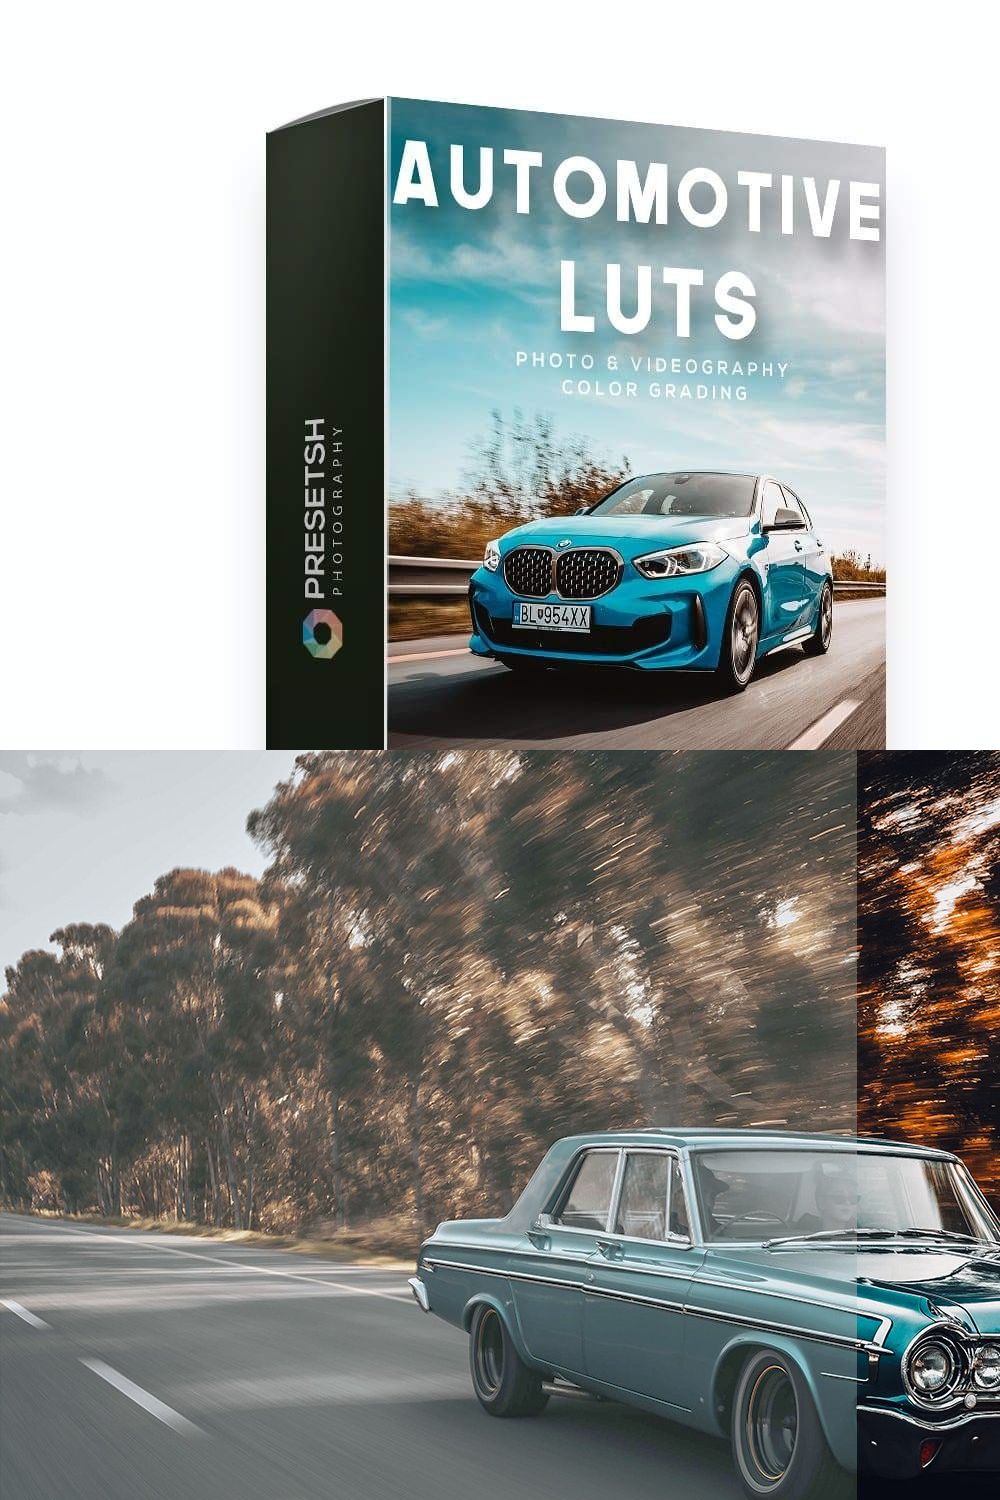 Automotive LUTS Color grading pinterest preview image.